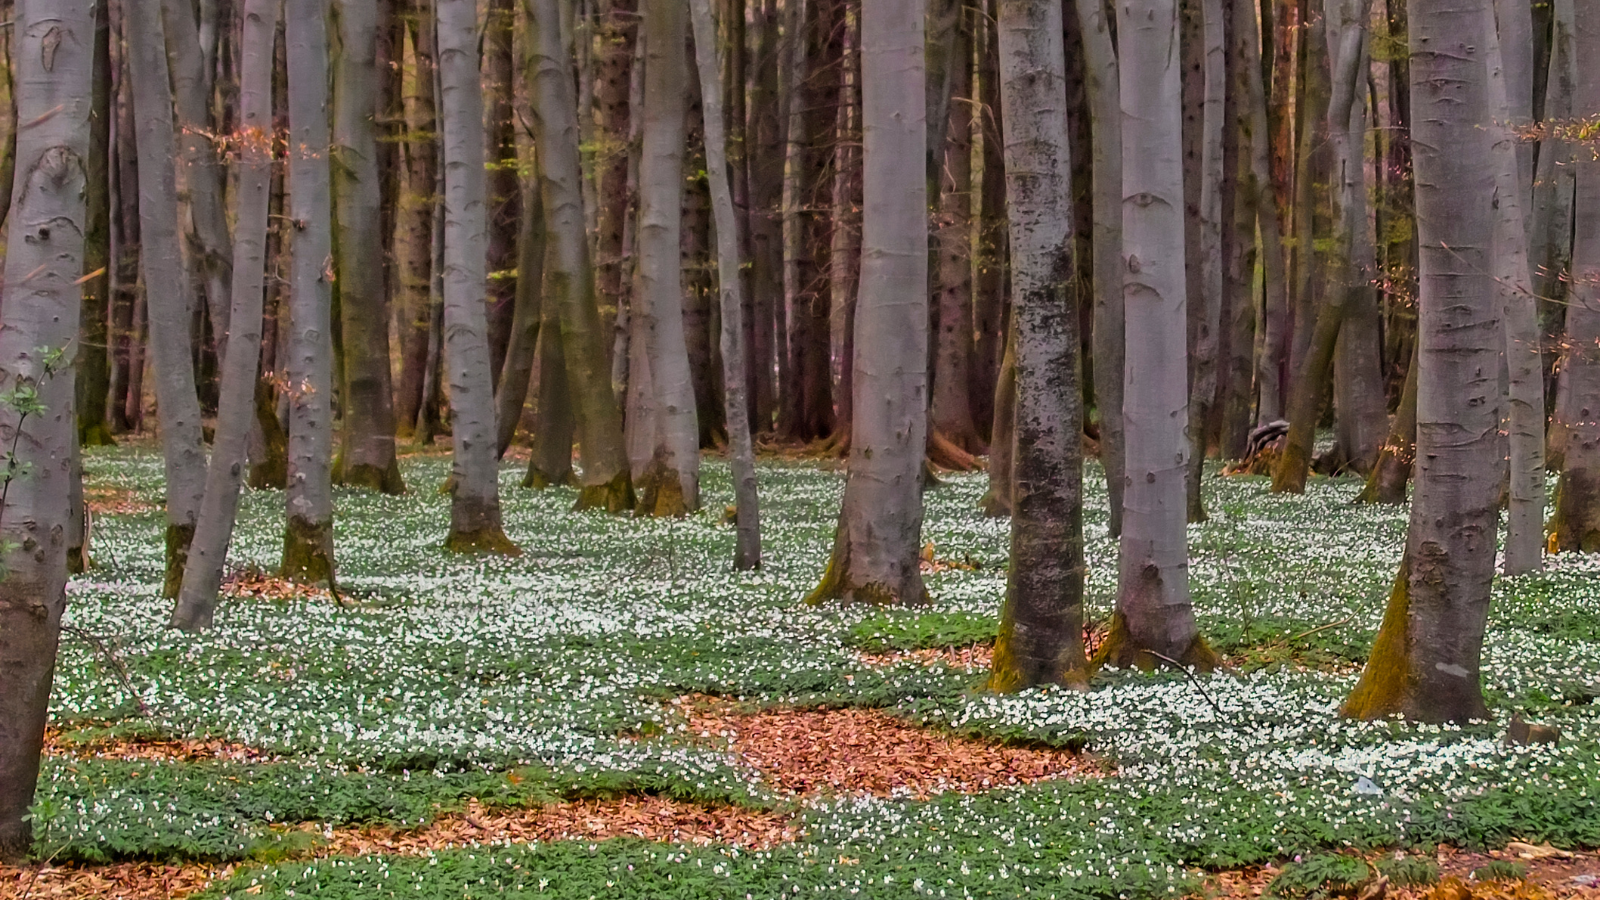 Hornbeam (Carpinus betulus) (forest floor with flowering anemones)